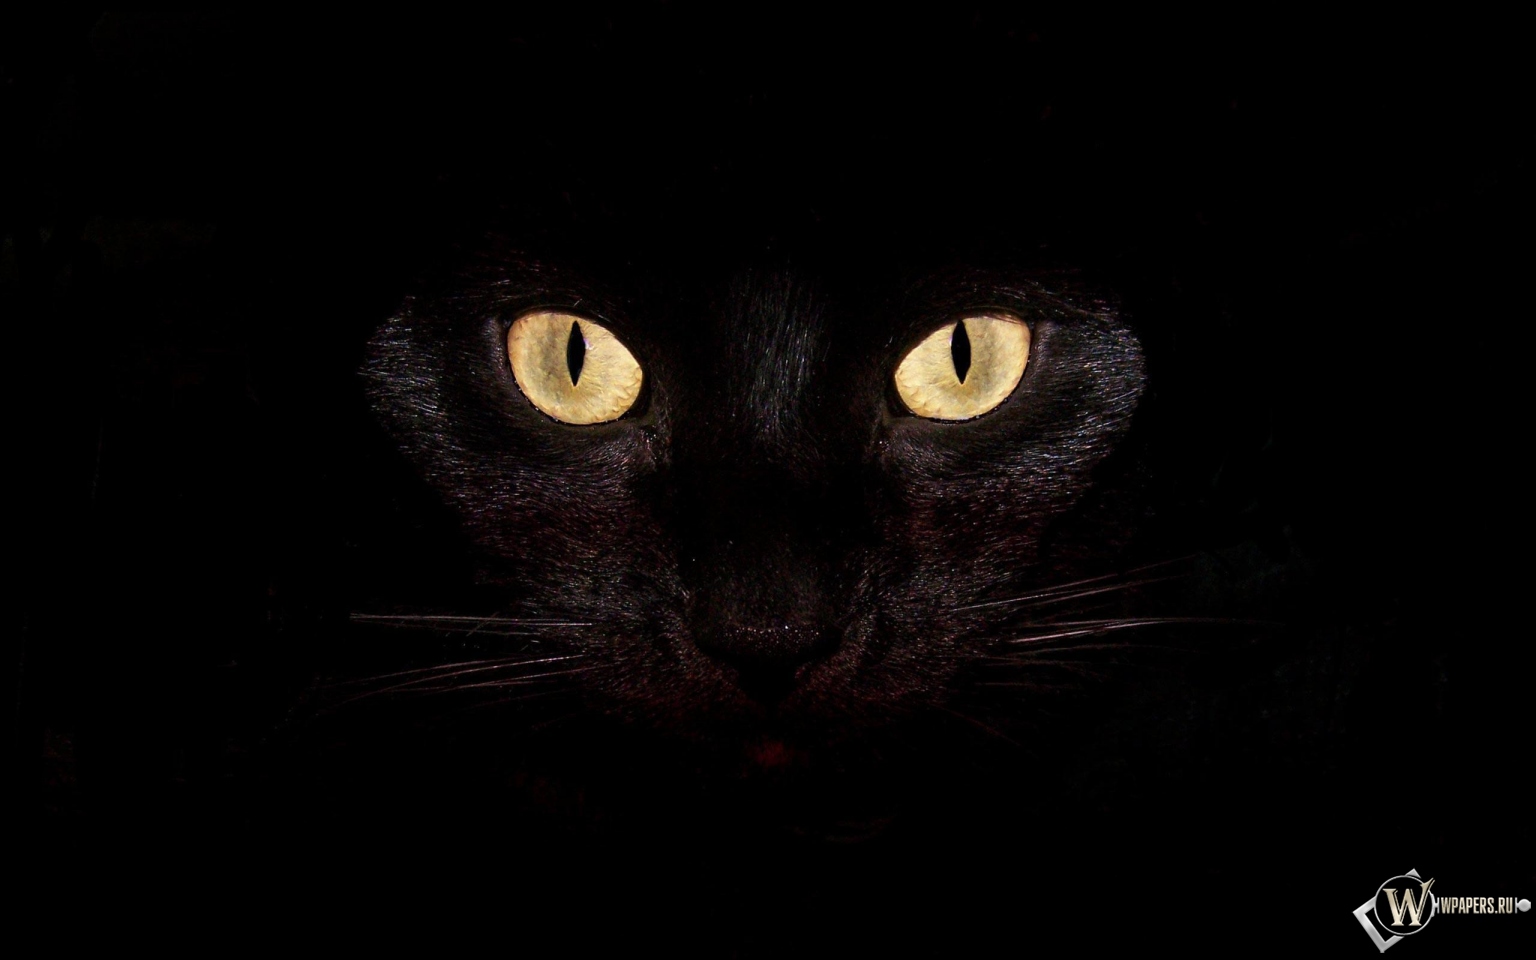 Черная кошка на чернофм фоне 1536x960